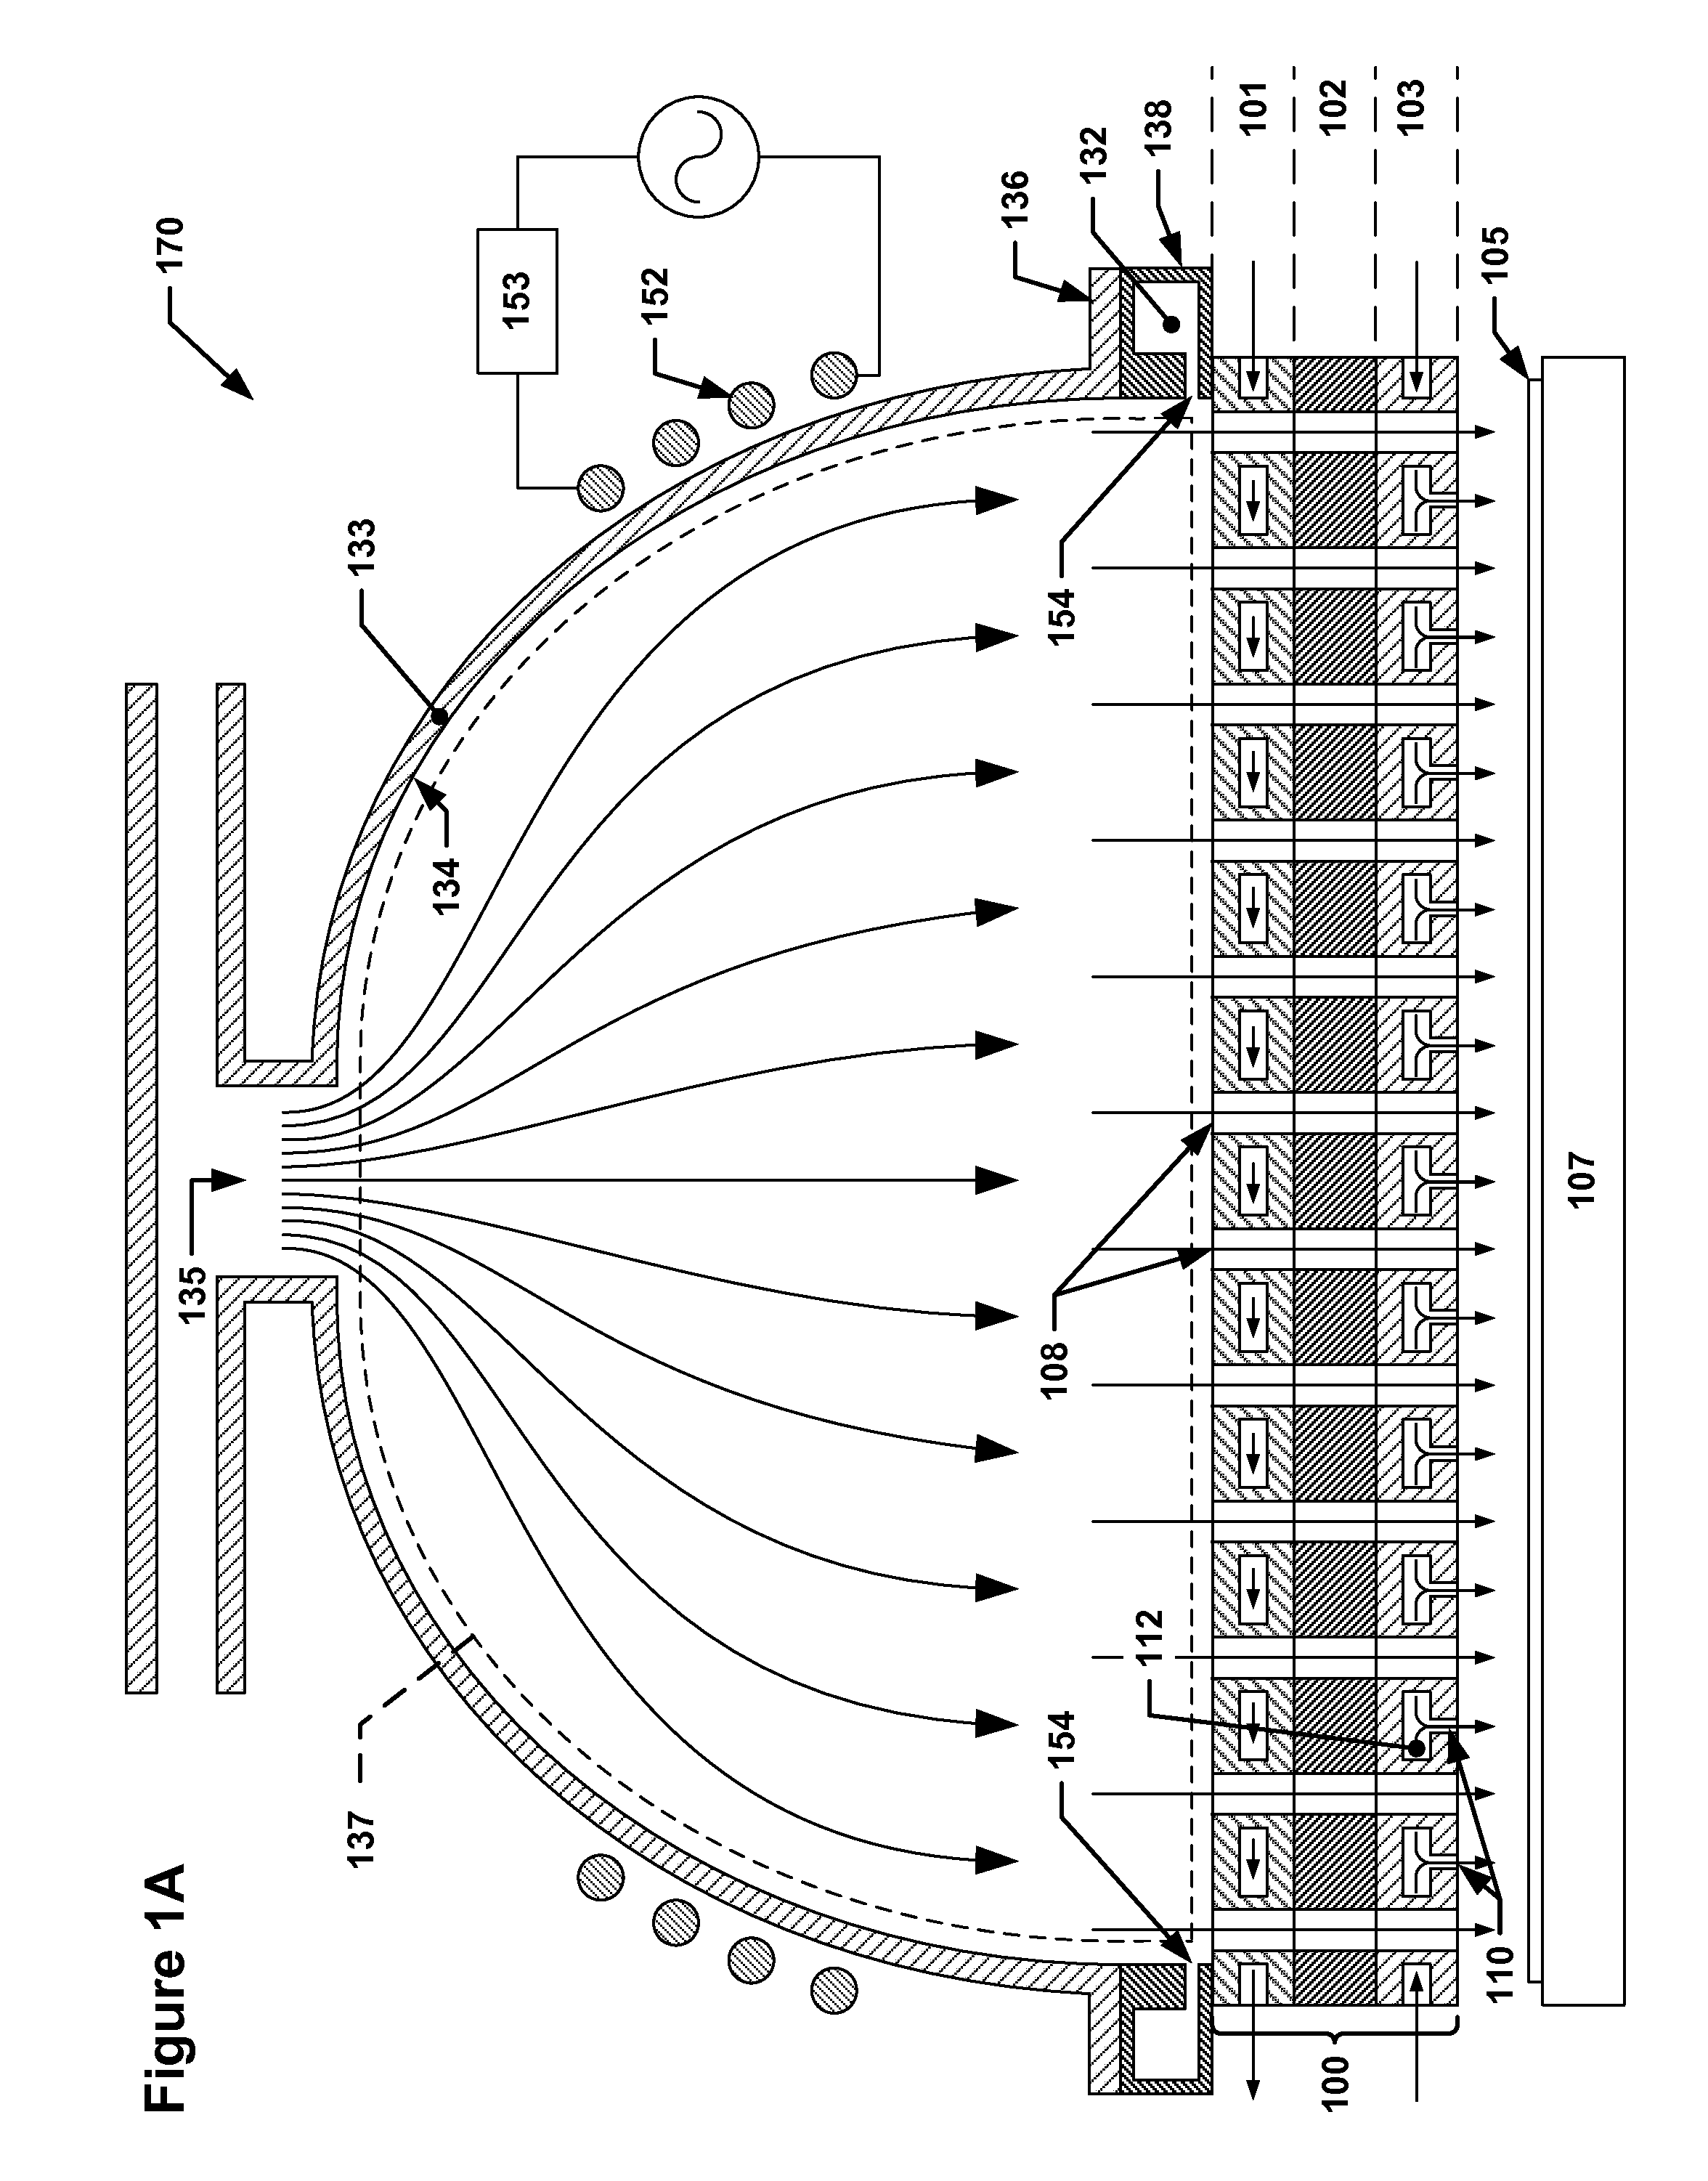 Multi-plenum showerhead with temperature control